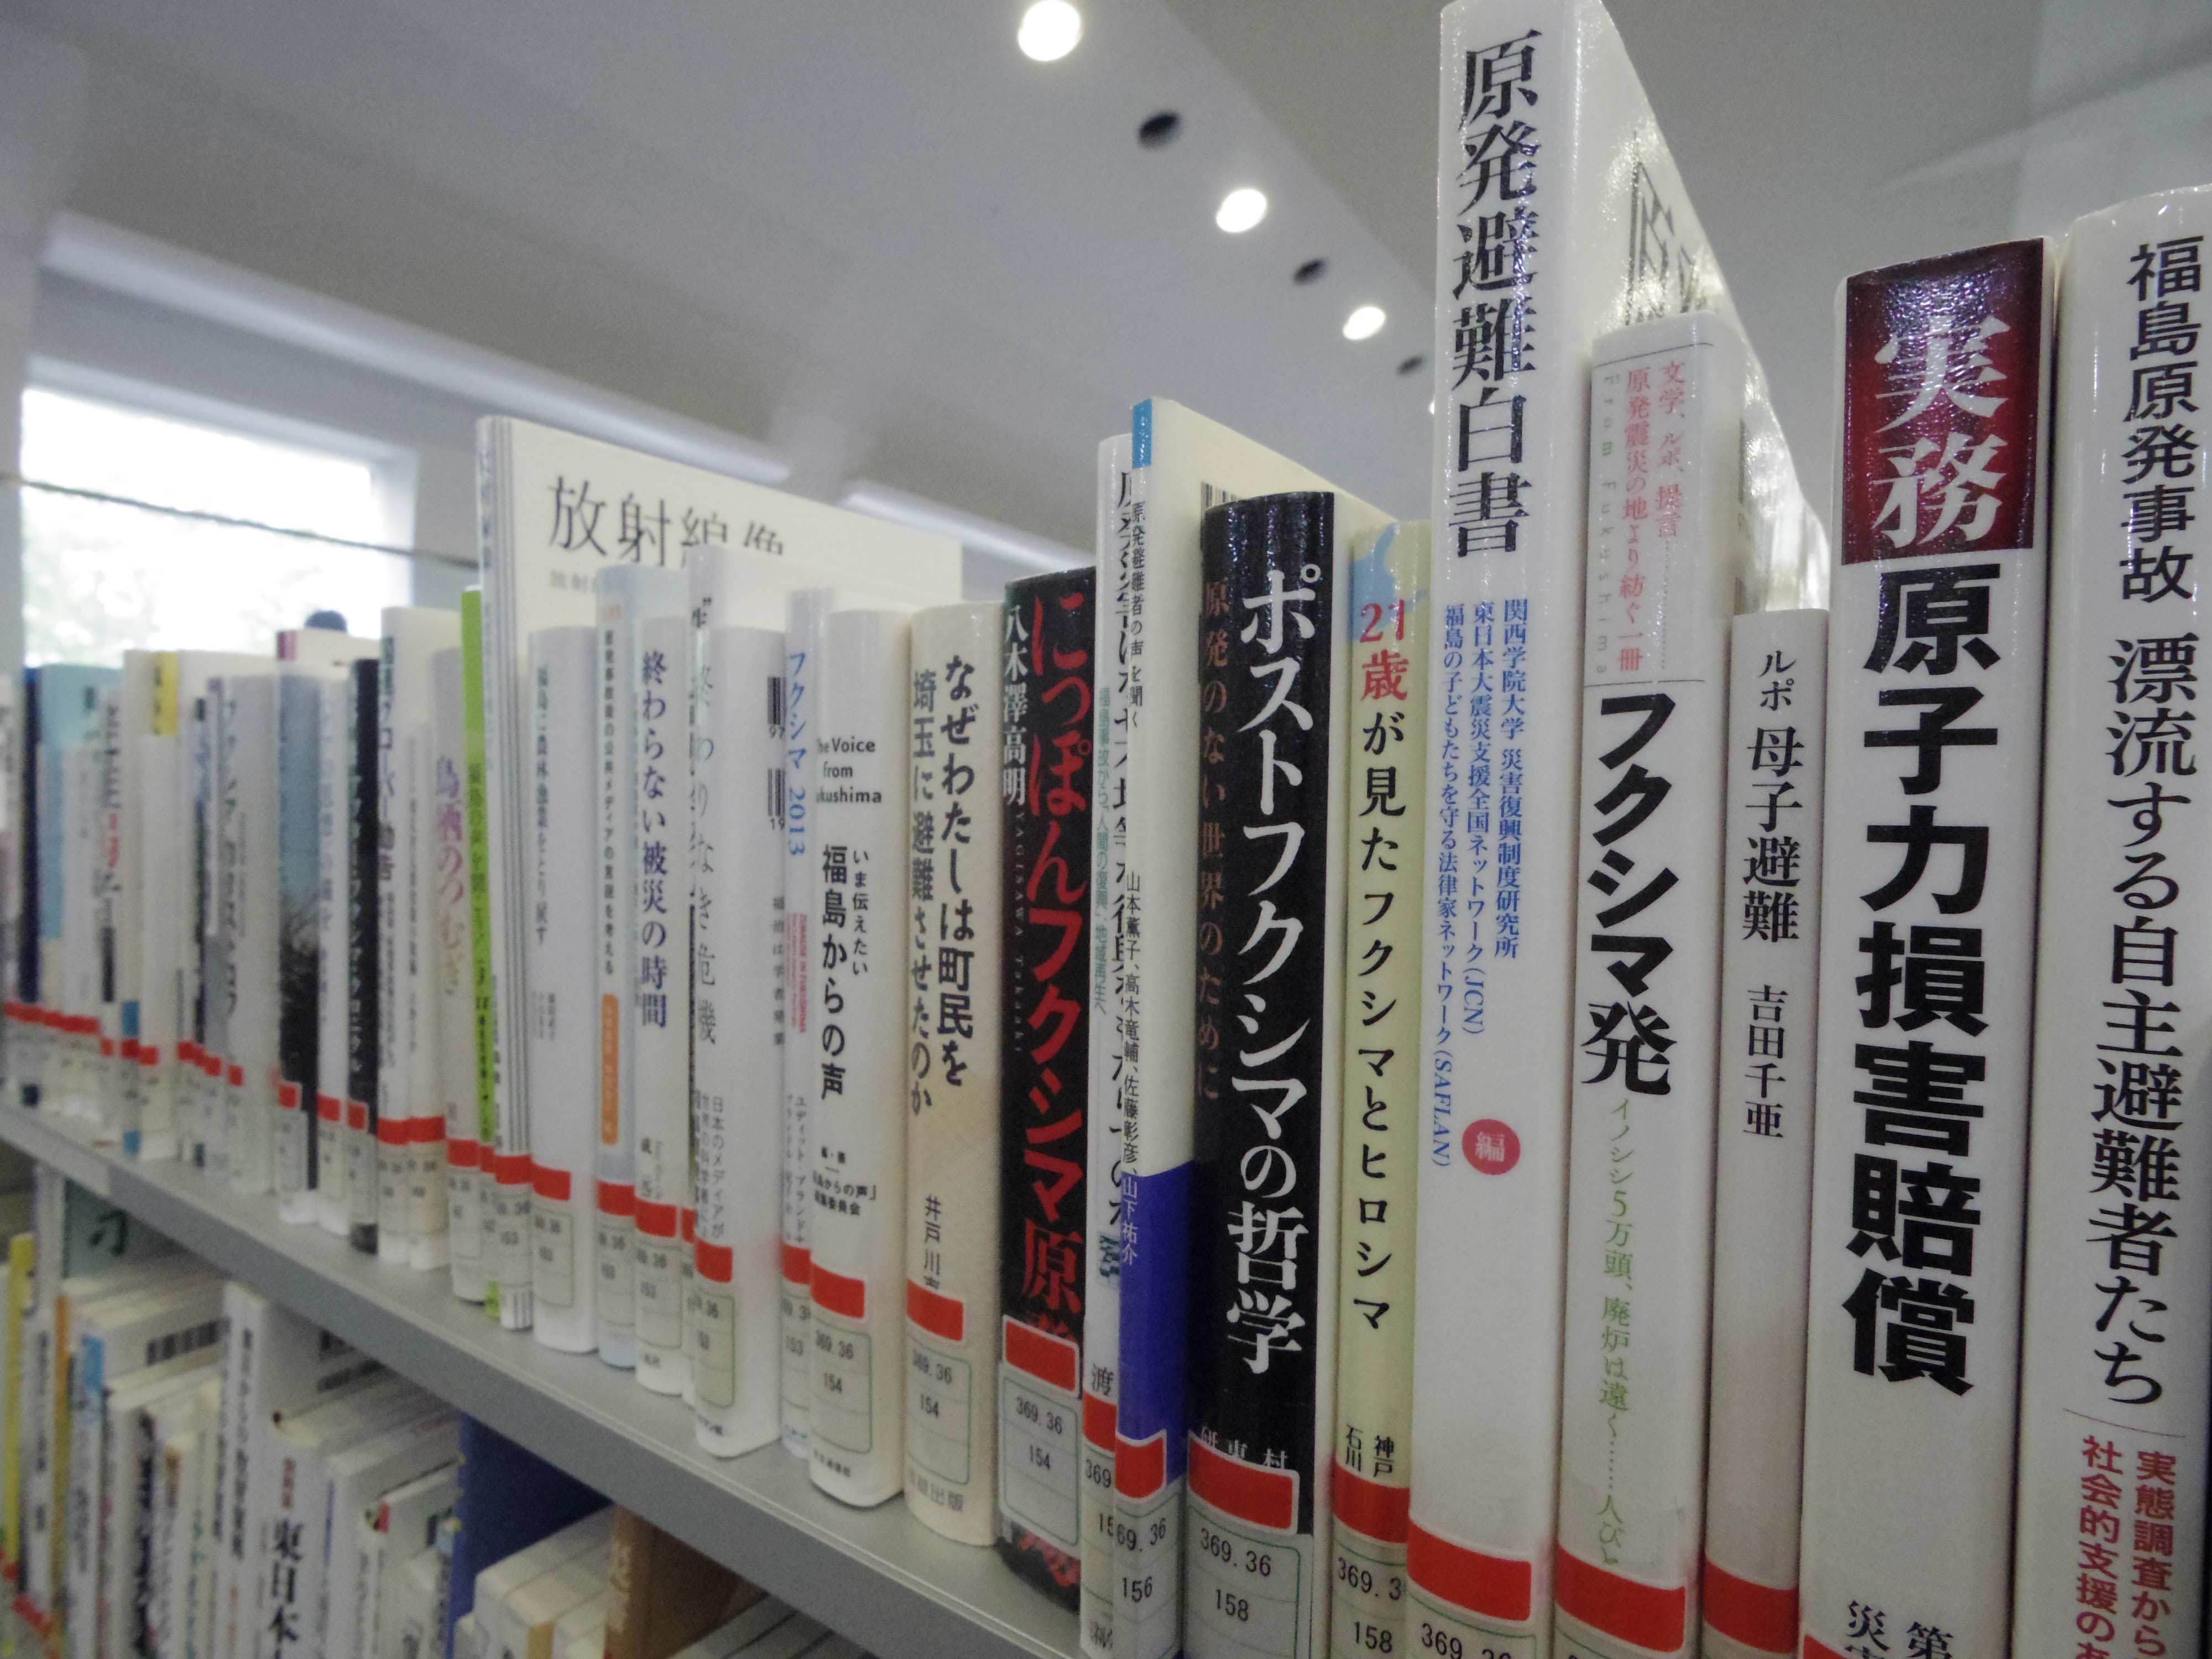 東日本震災文庫に並ぶ本